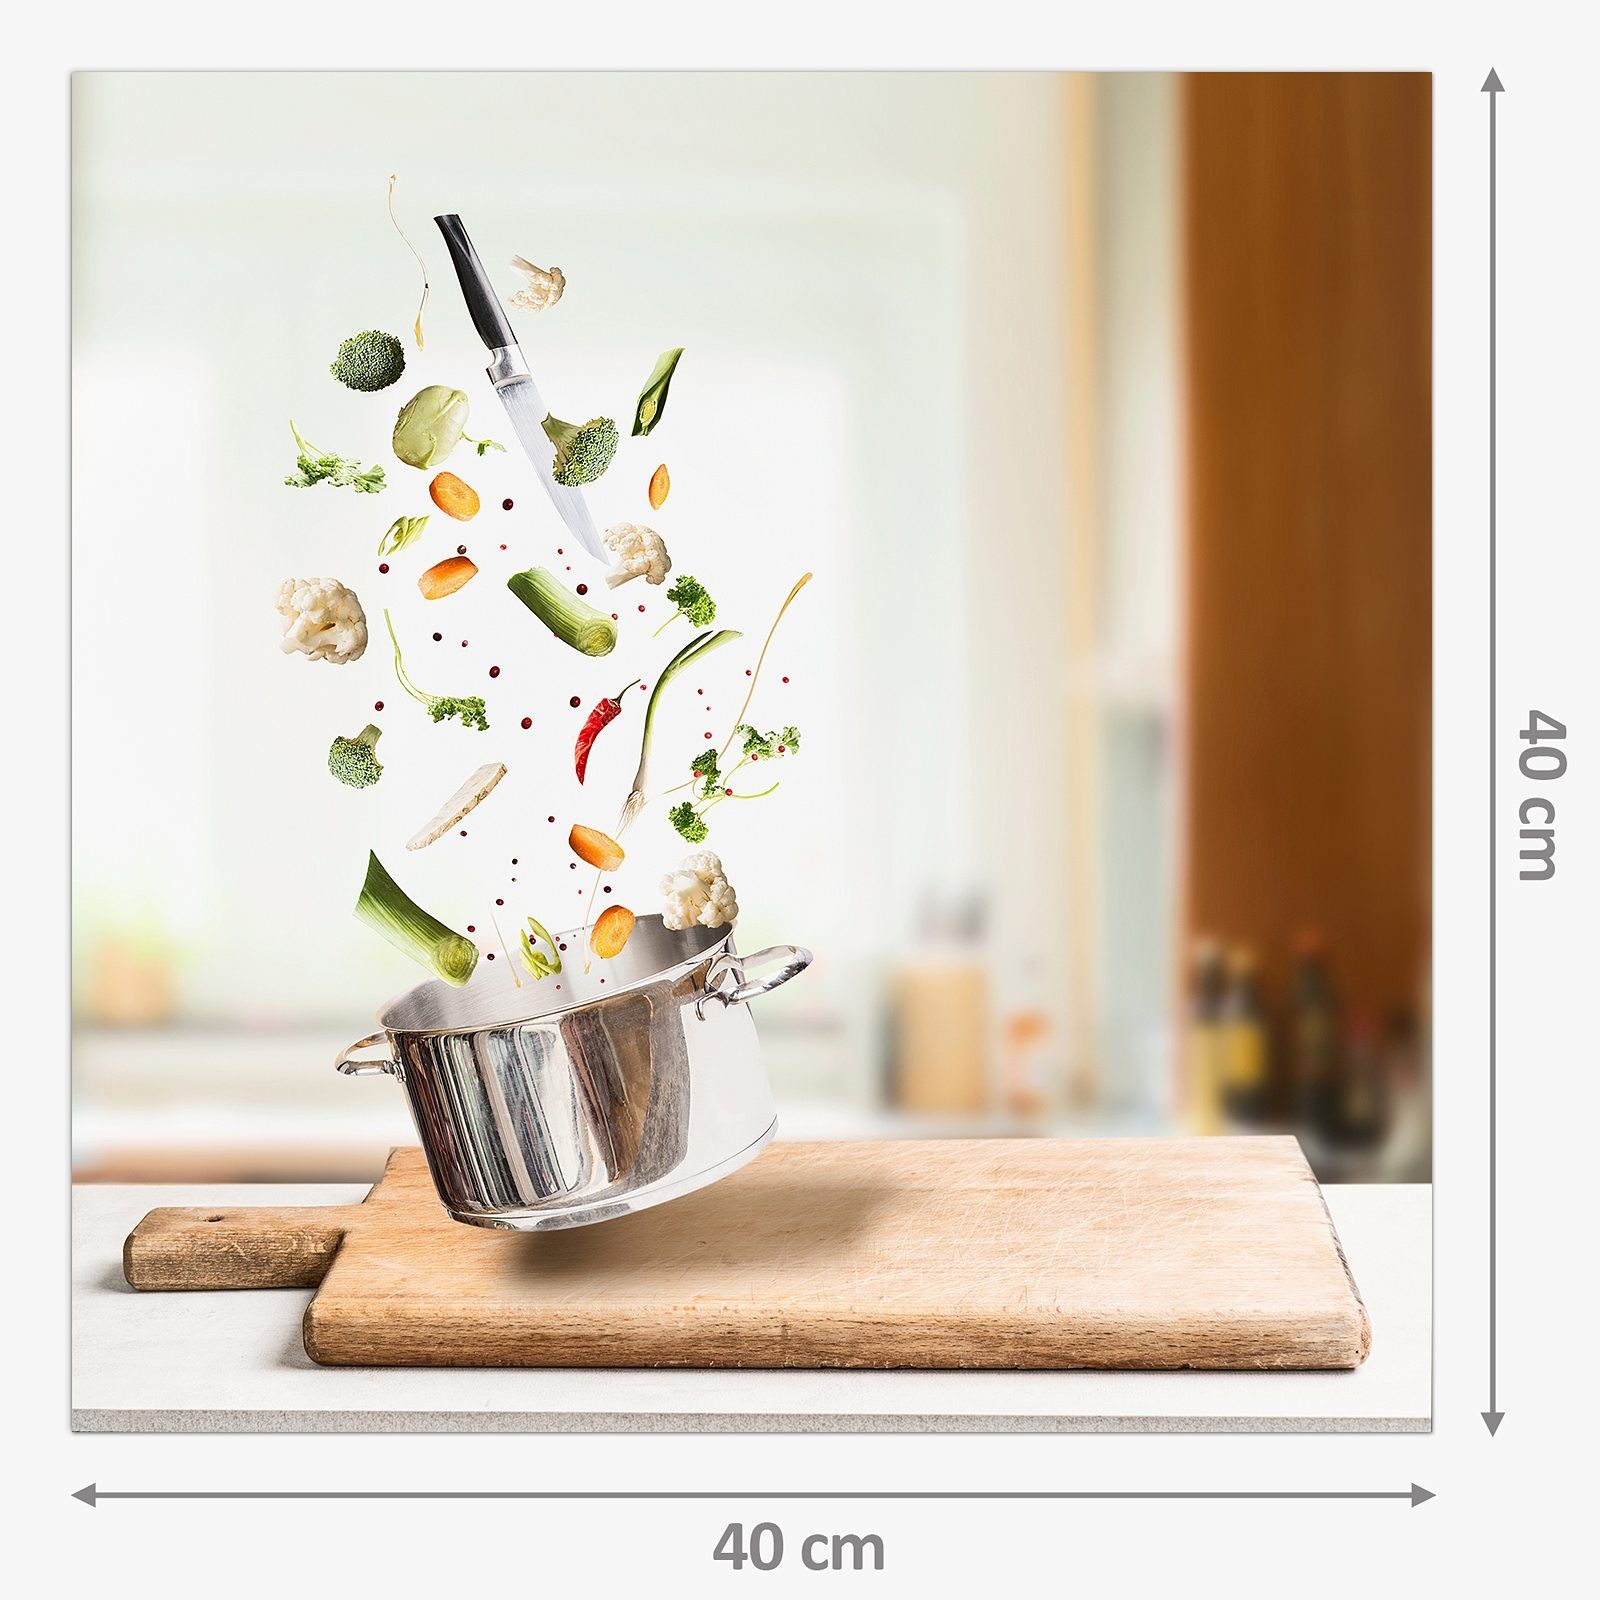 Primedeco Küchenrückwand fallend mit Spritzschutz Glas Motiv Gemüse Topf Küchenrückwand in